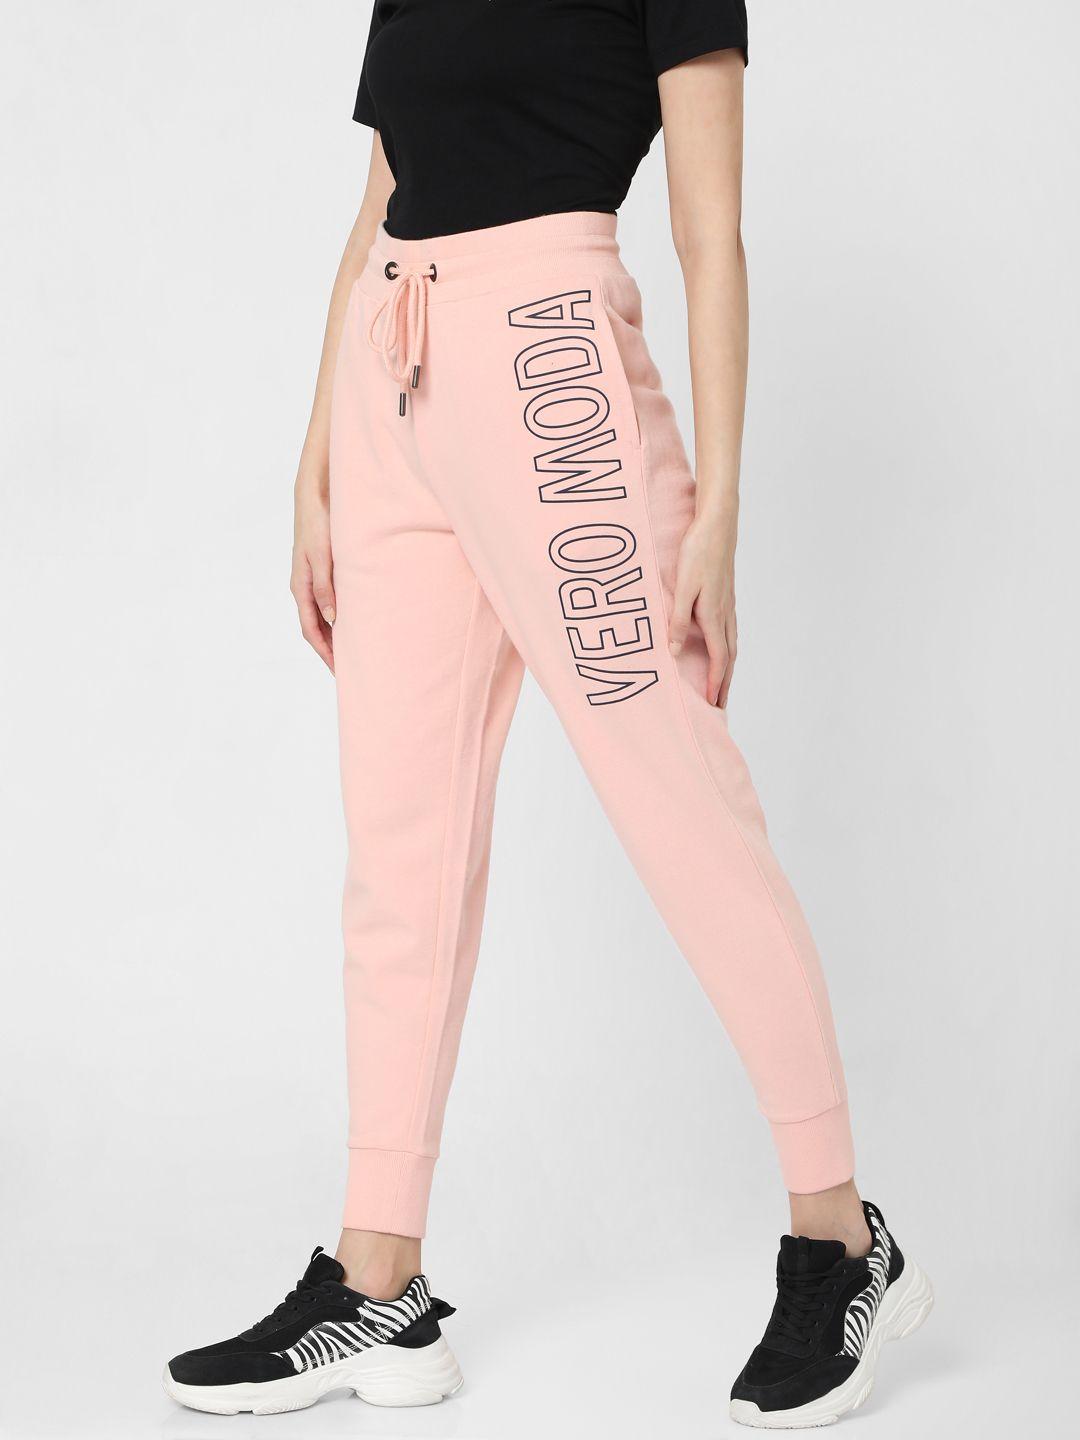 vero moda women pink printed  slim fit joggers